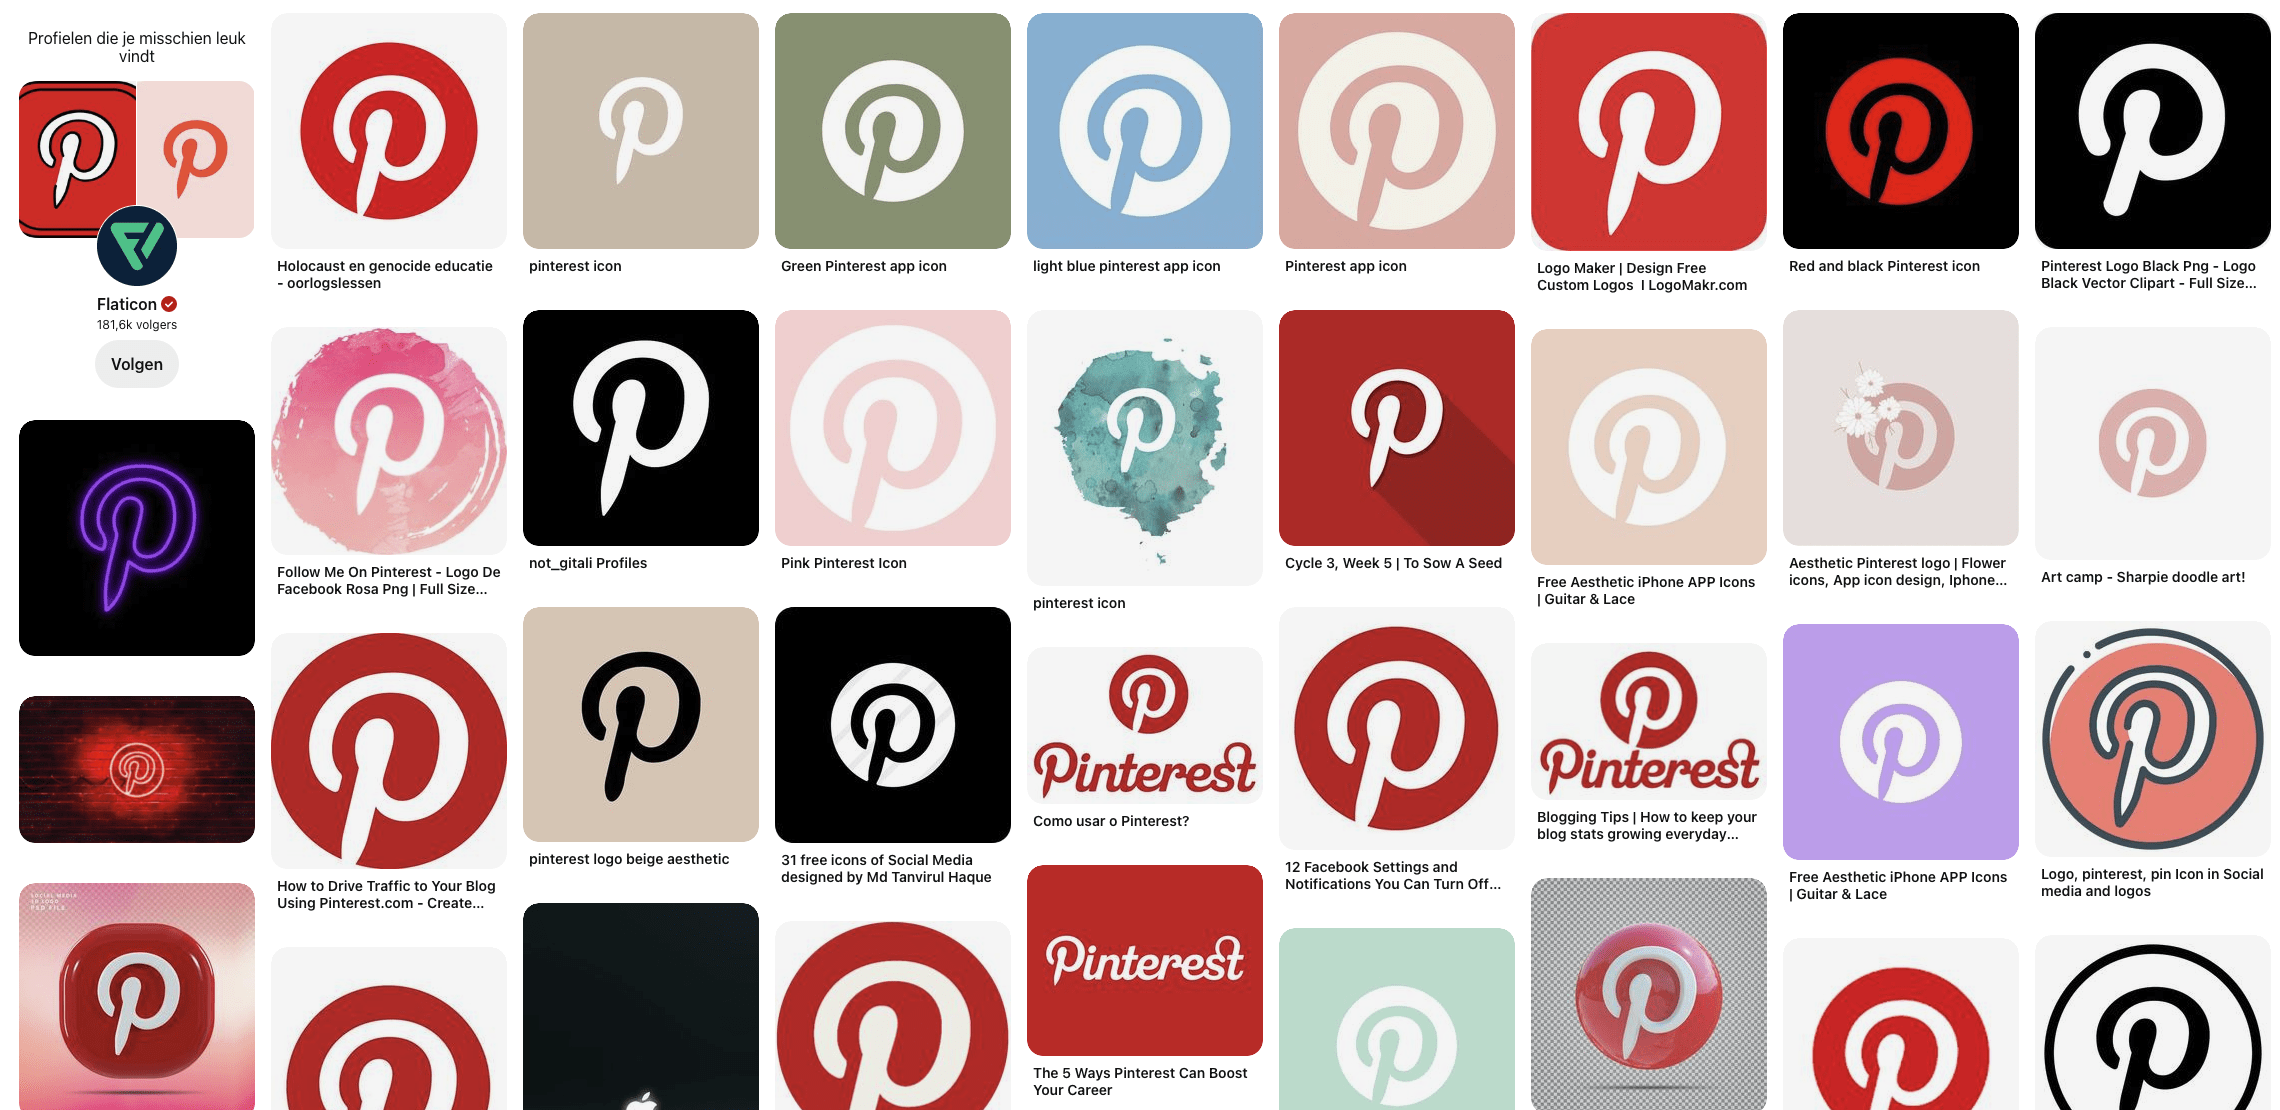 Wat kun je doen met Pinterest? Alles over Pinterest